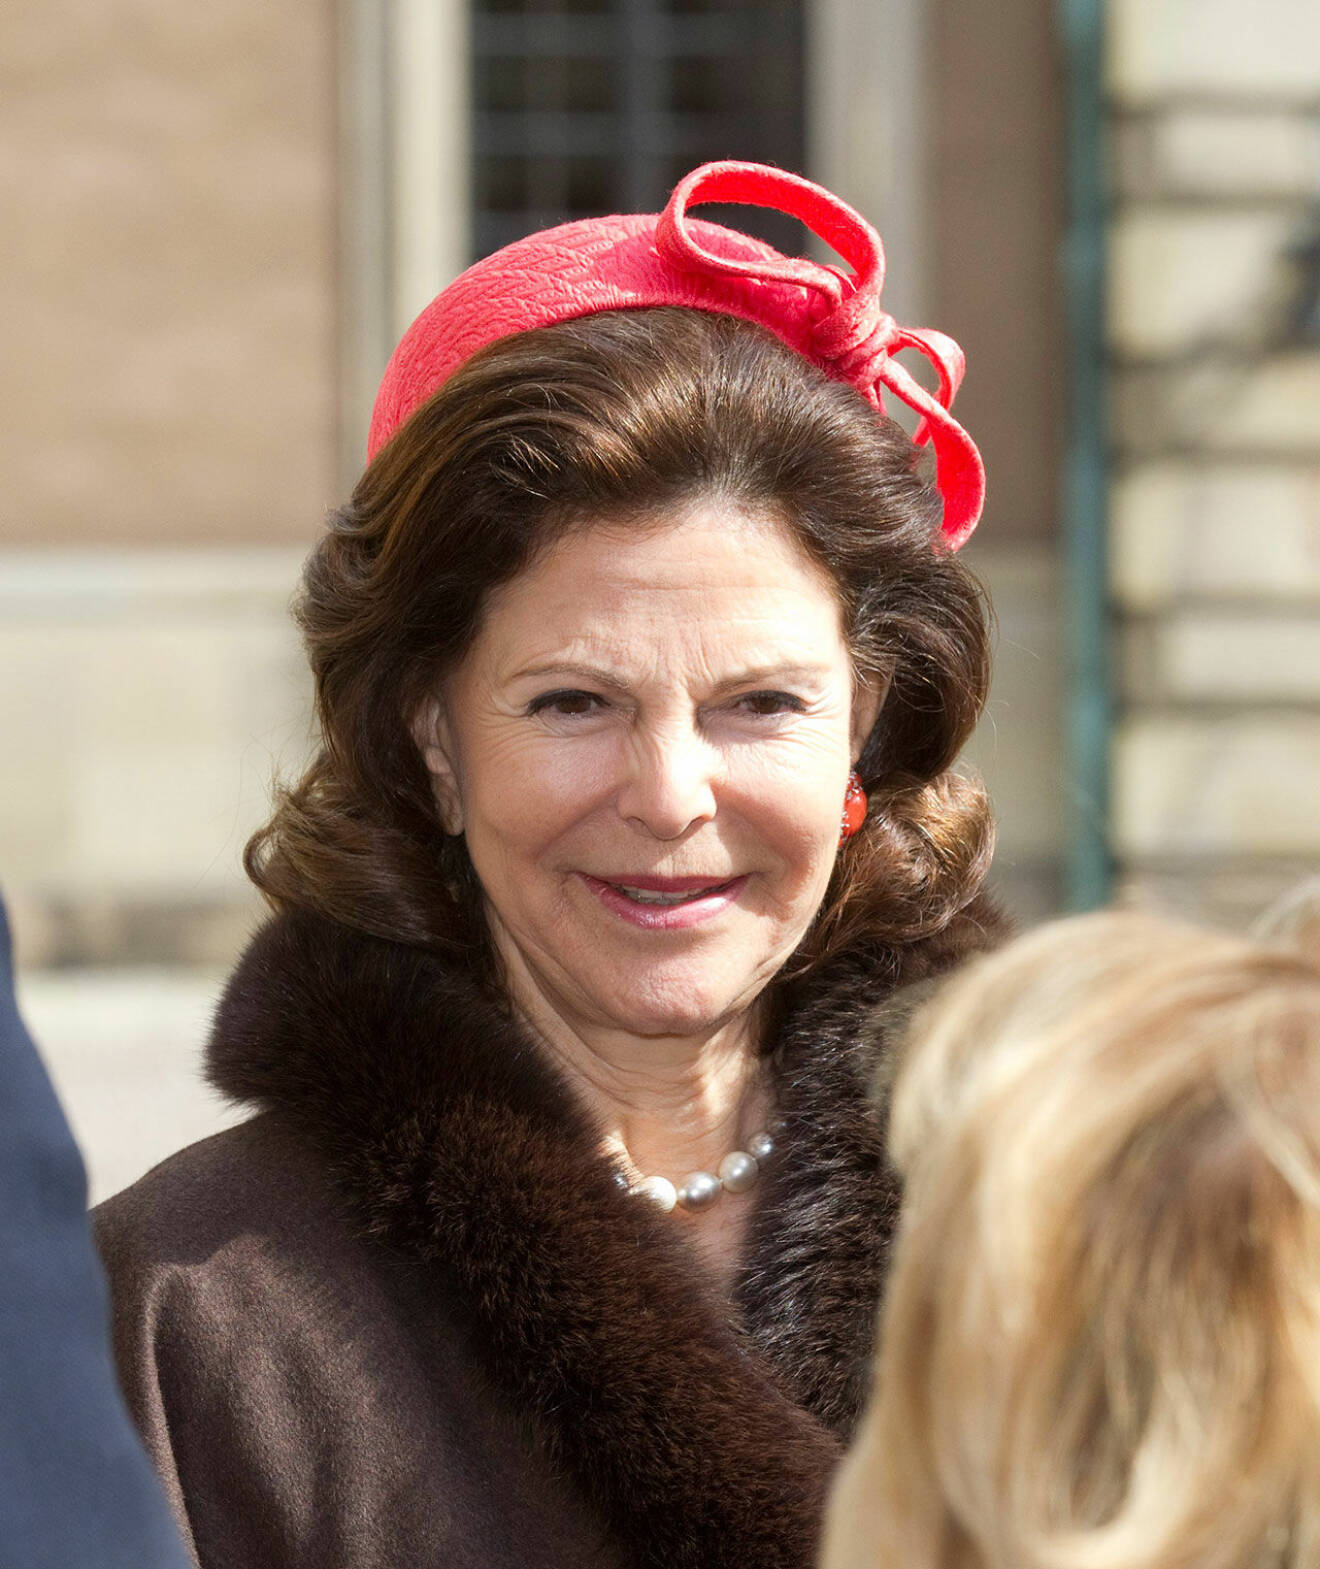 Silvia i röd hatt